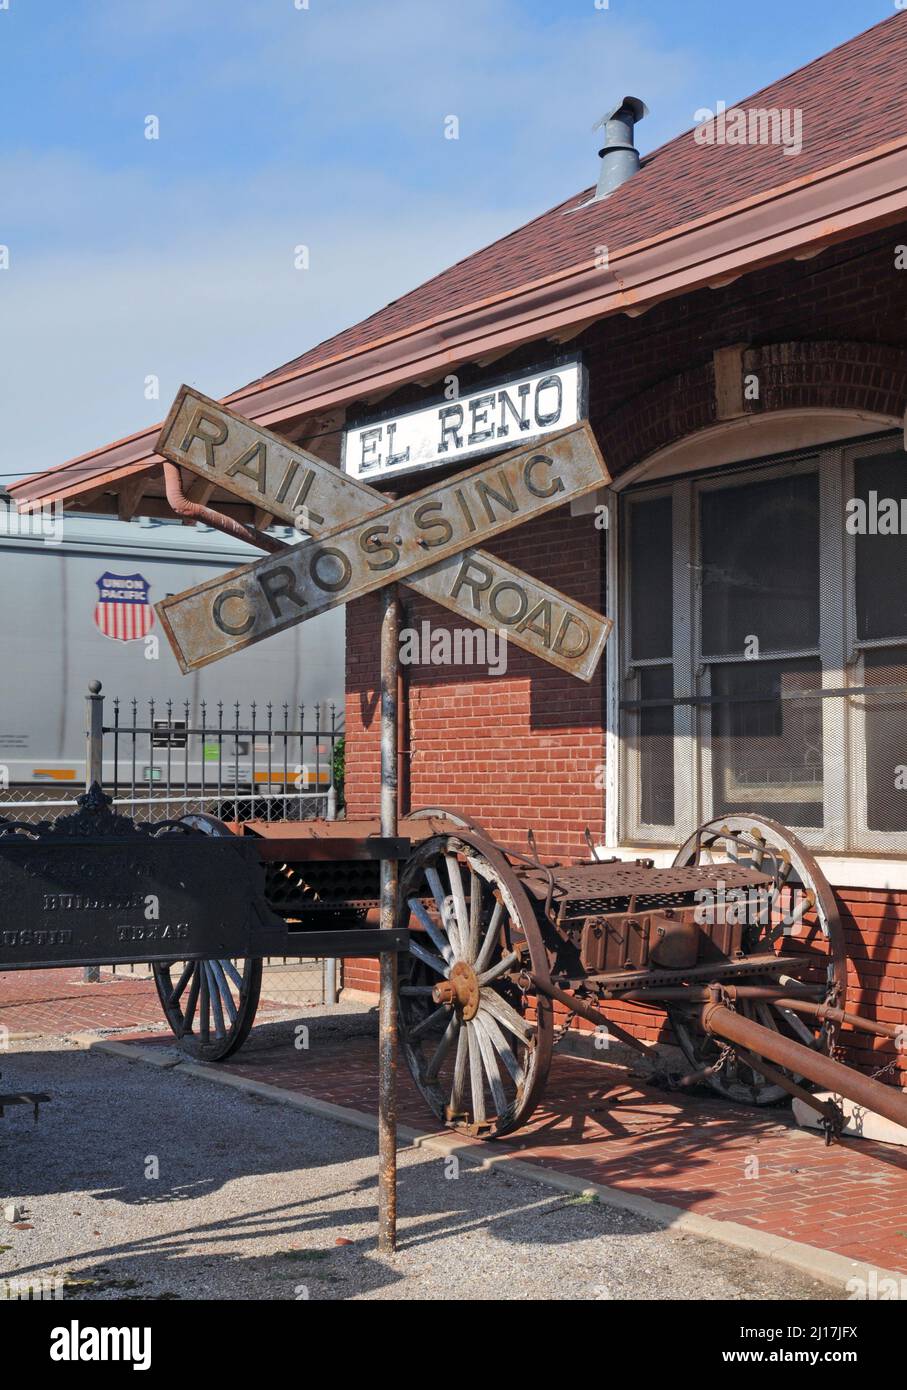 Am historischen Bahnhof El Reno, der jetzt Teil des Canadian County Historical Society Museum in der Stadt Oklahoma ist, steht ein Bahnübergangsschild. Stockfoto